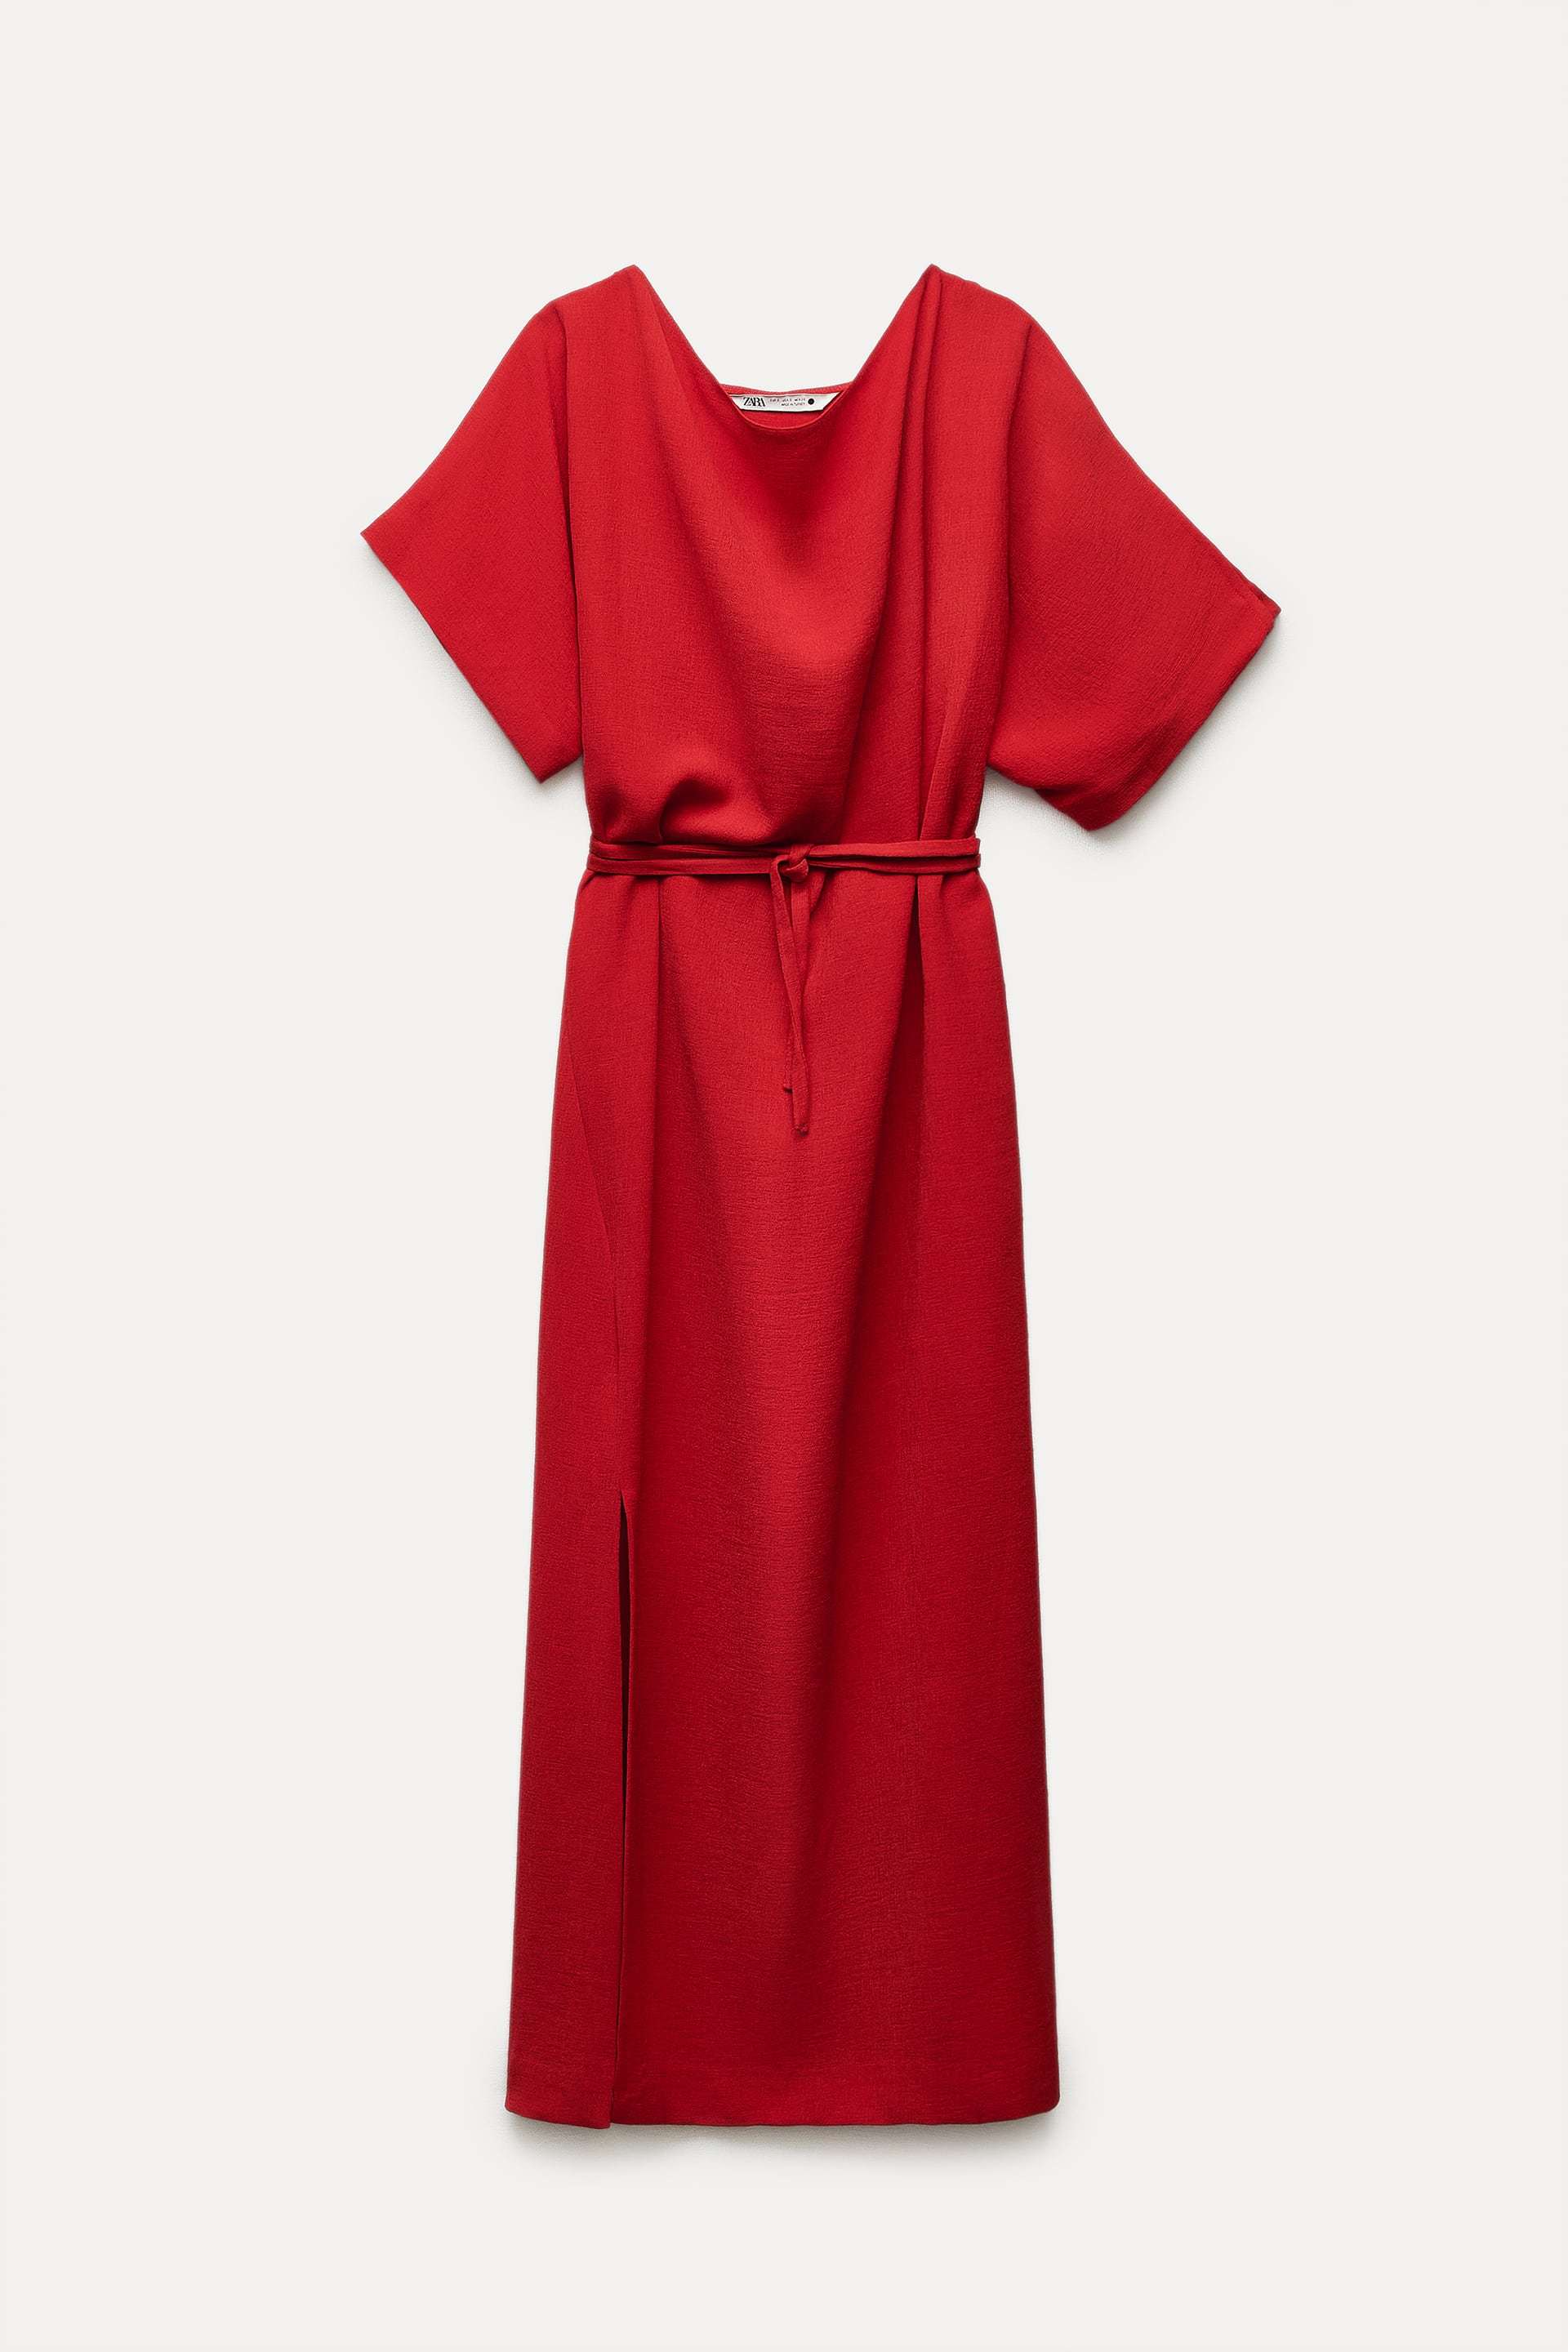 Vestido rojo de manga corta de Zara (19,95 euros).